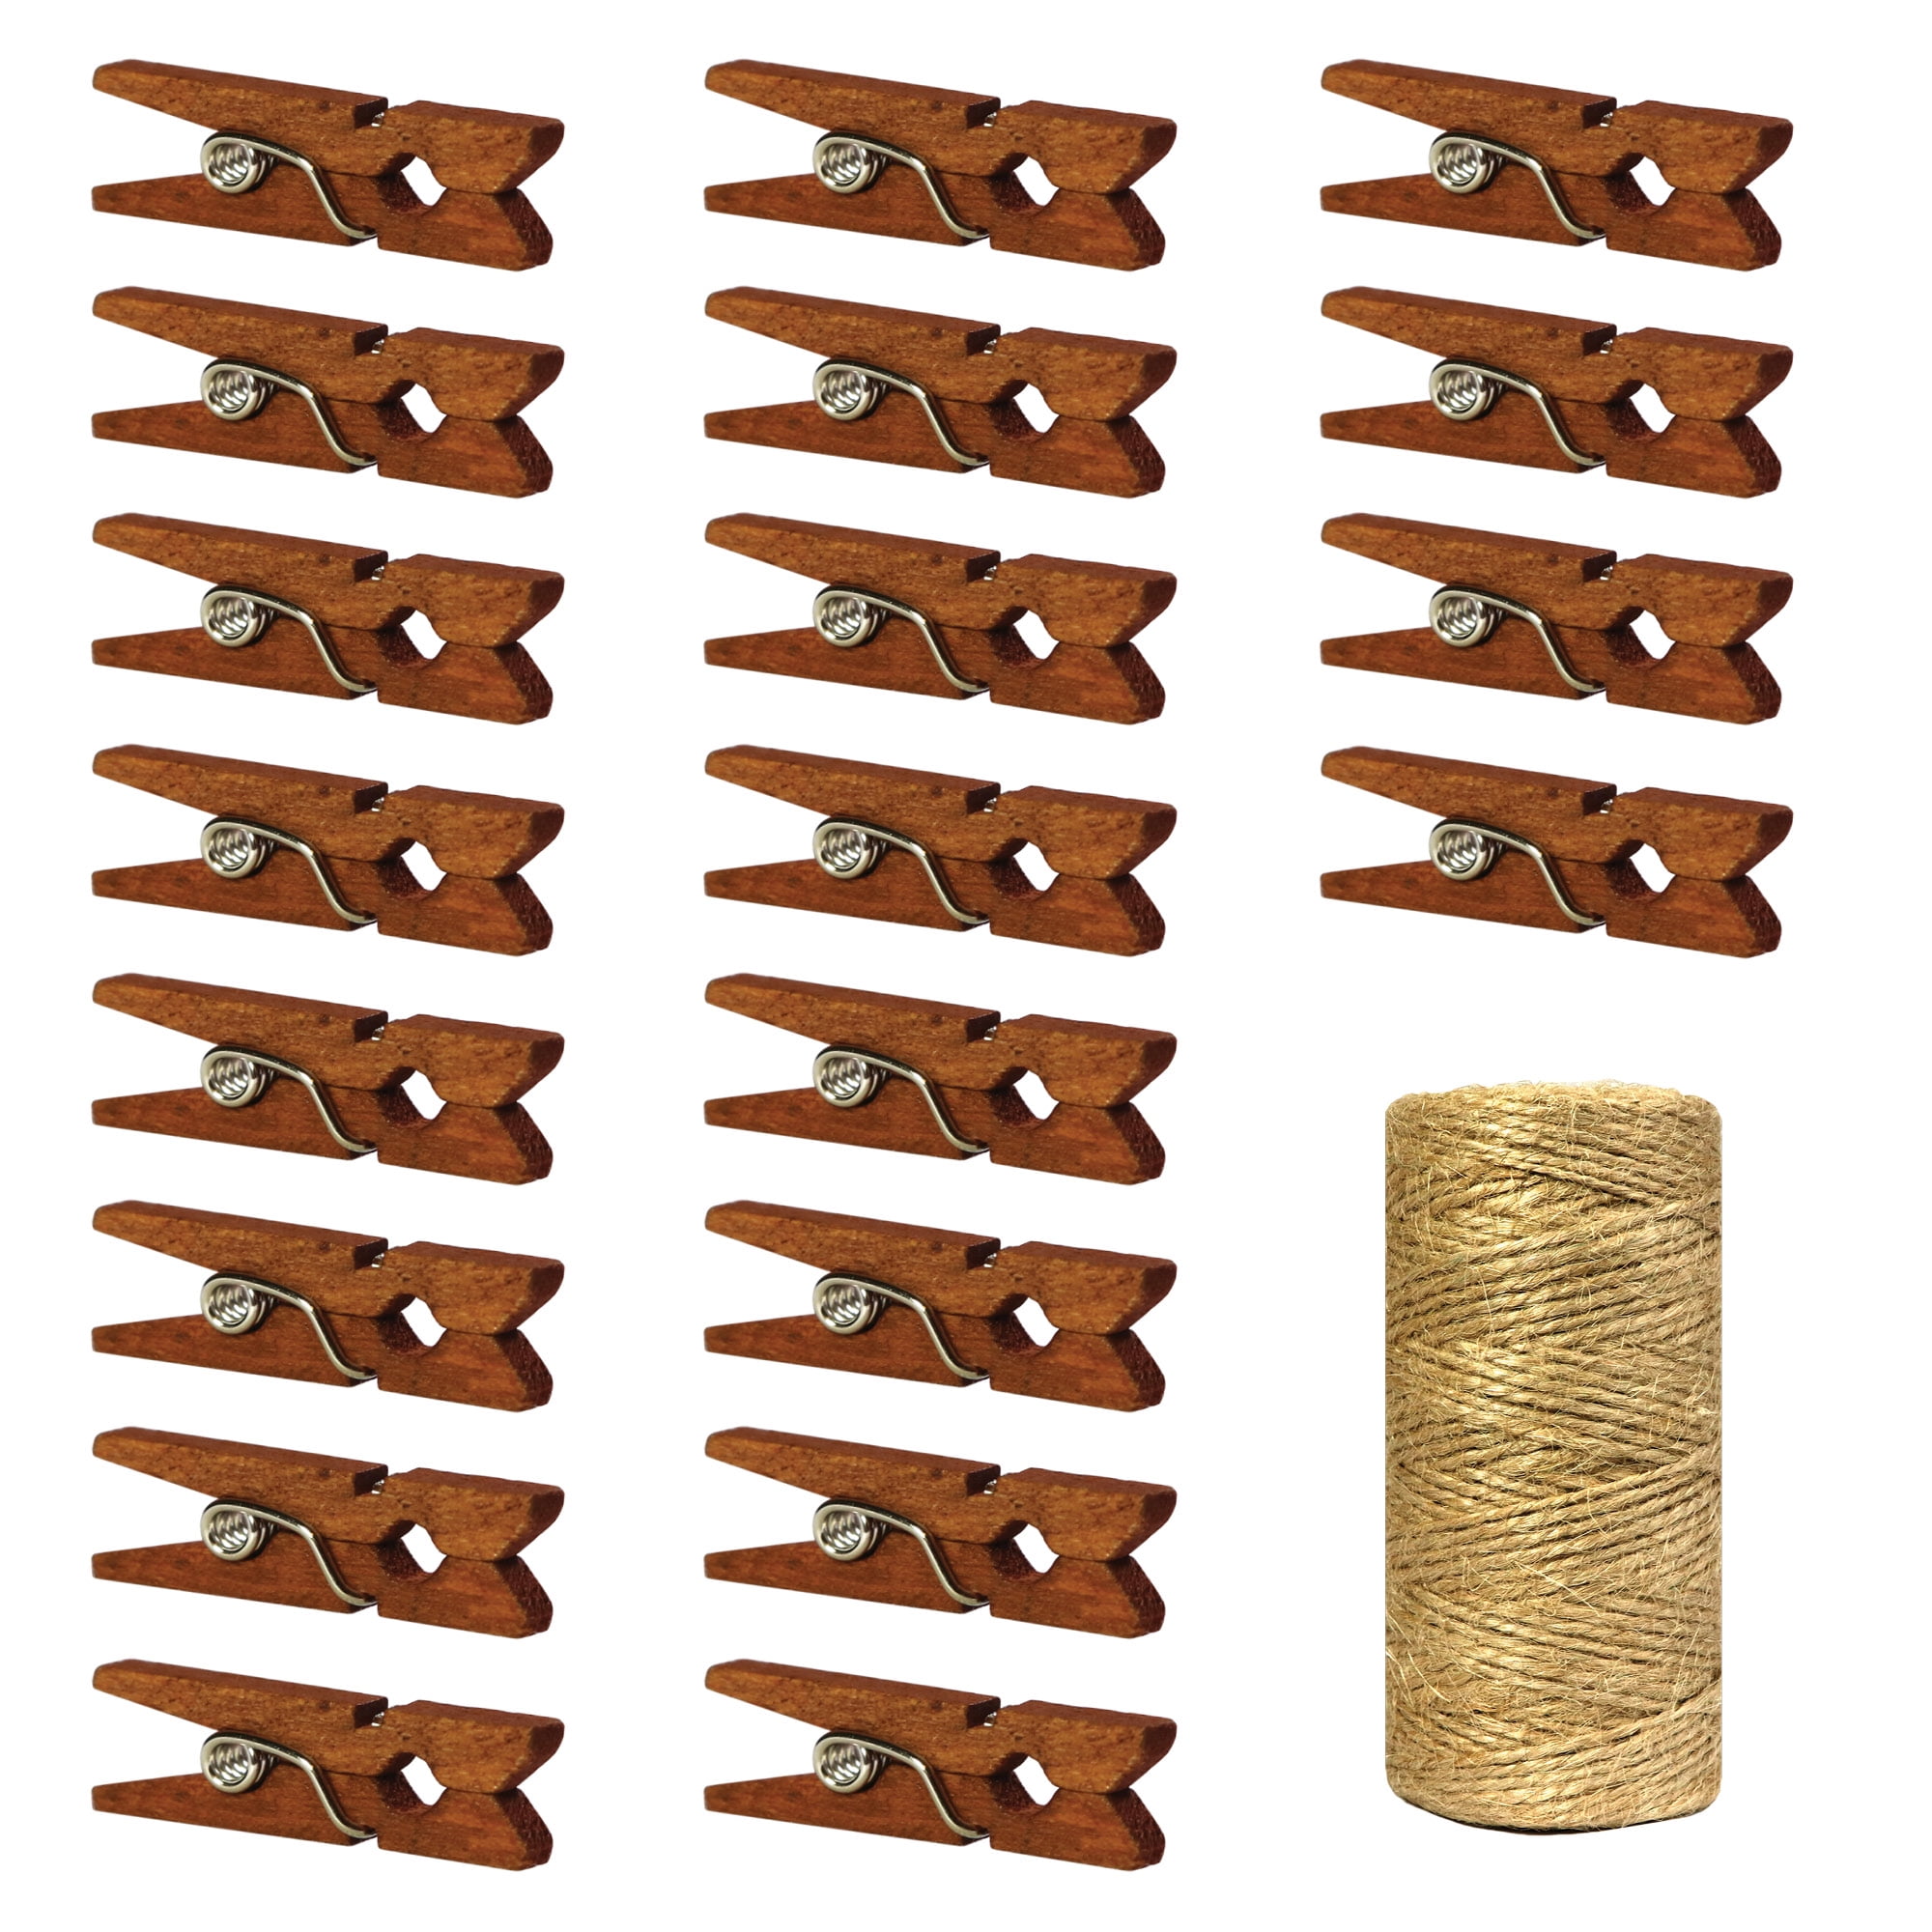 50x Mini Wood Clothespins Laundry Photo Paper Peg Clip Clothes Pins Art  Craft